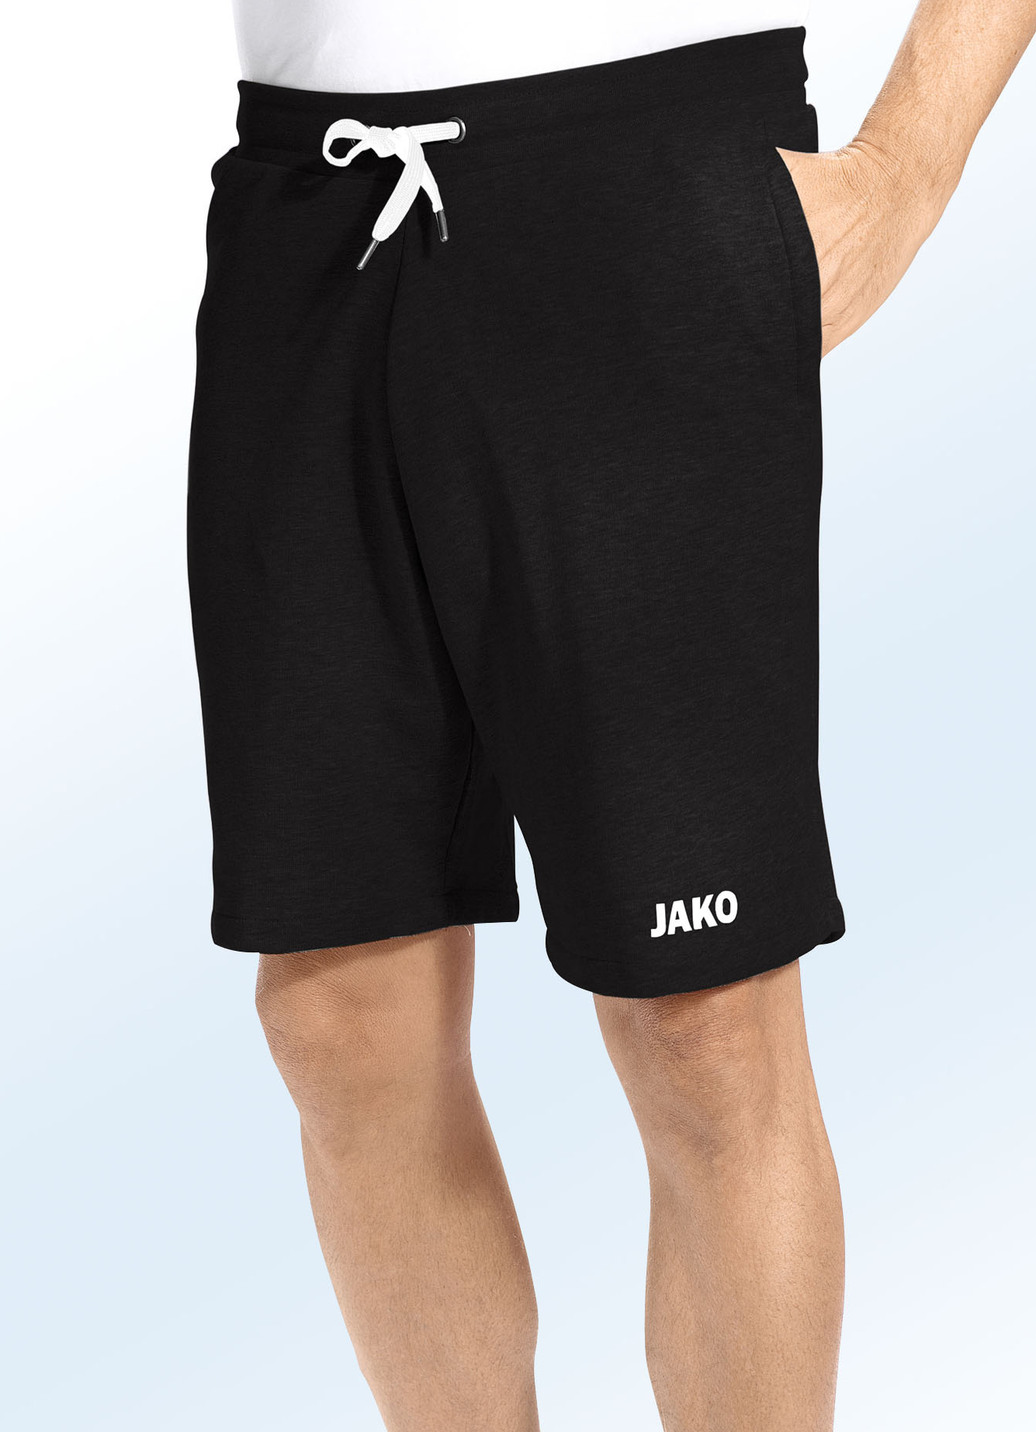 "Jako"-Shorts in 3 Farben, Schwarz, Größe 4XL (62) von Jako